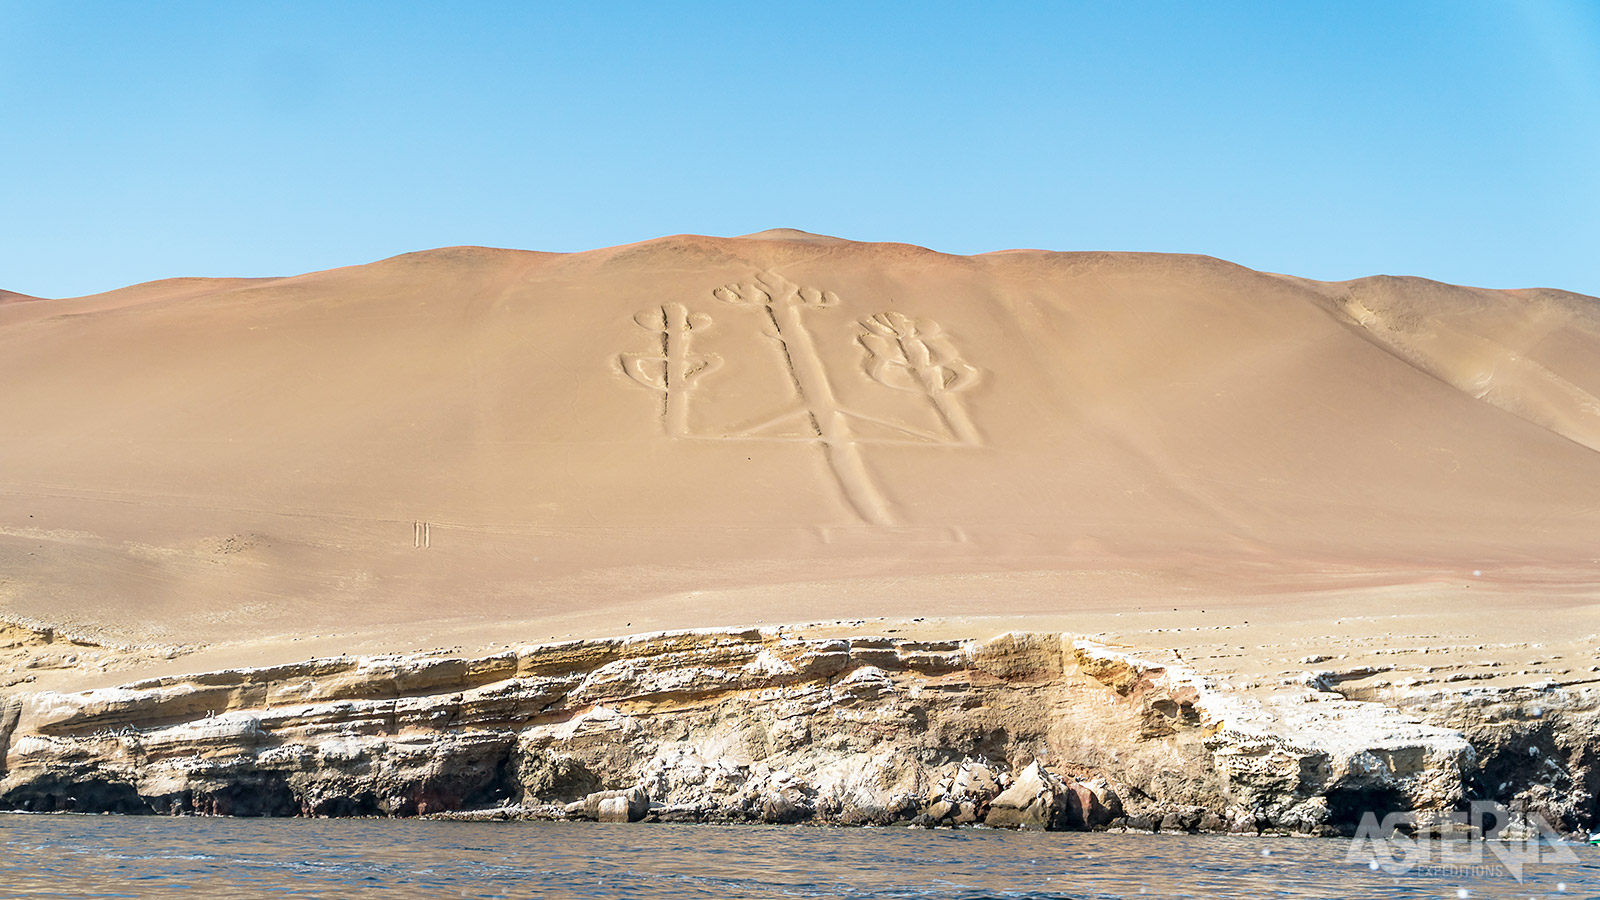 De Candelabrageoglief is een kandelaarachtige figuur in het zand waarvan niemand de betekenis of oorsprong weet